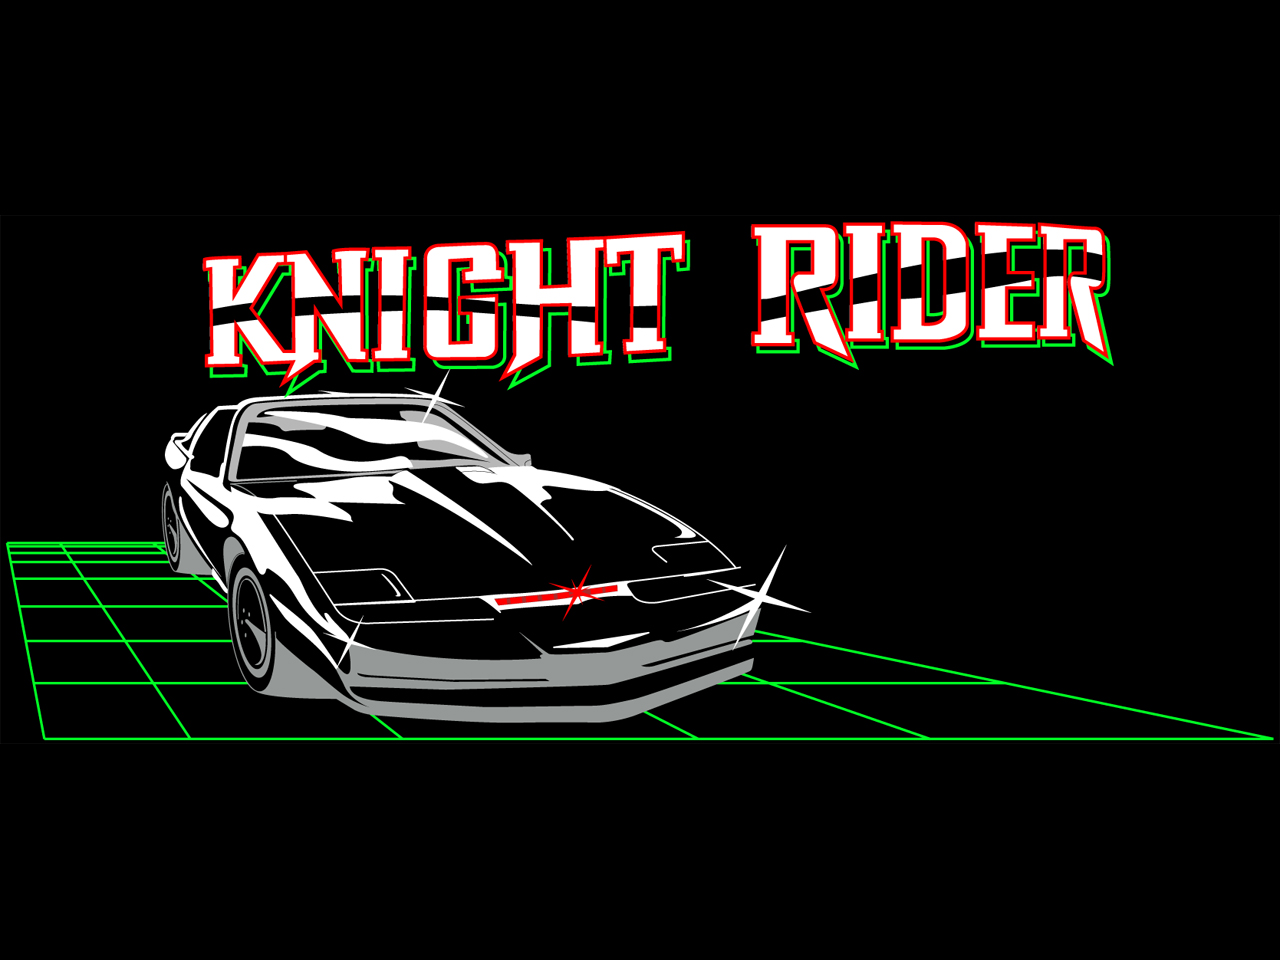 Knight Rider Live Wallpaper